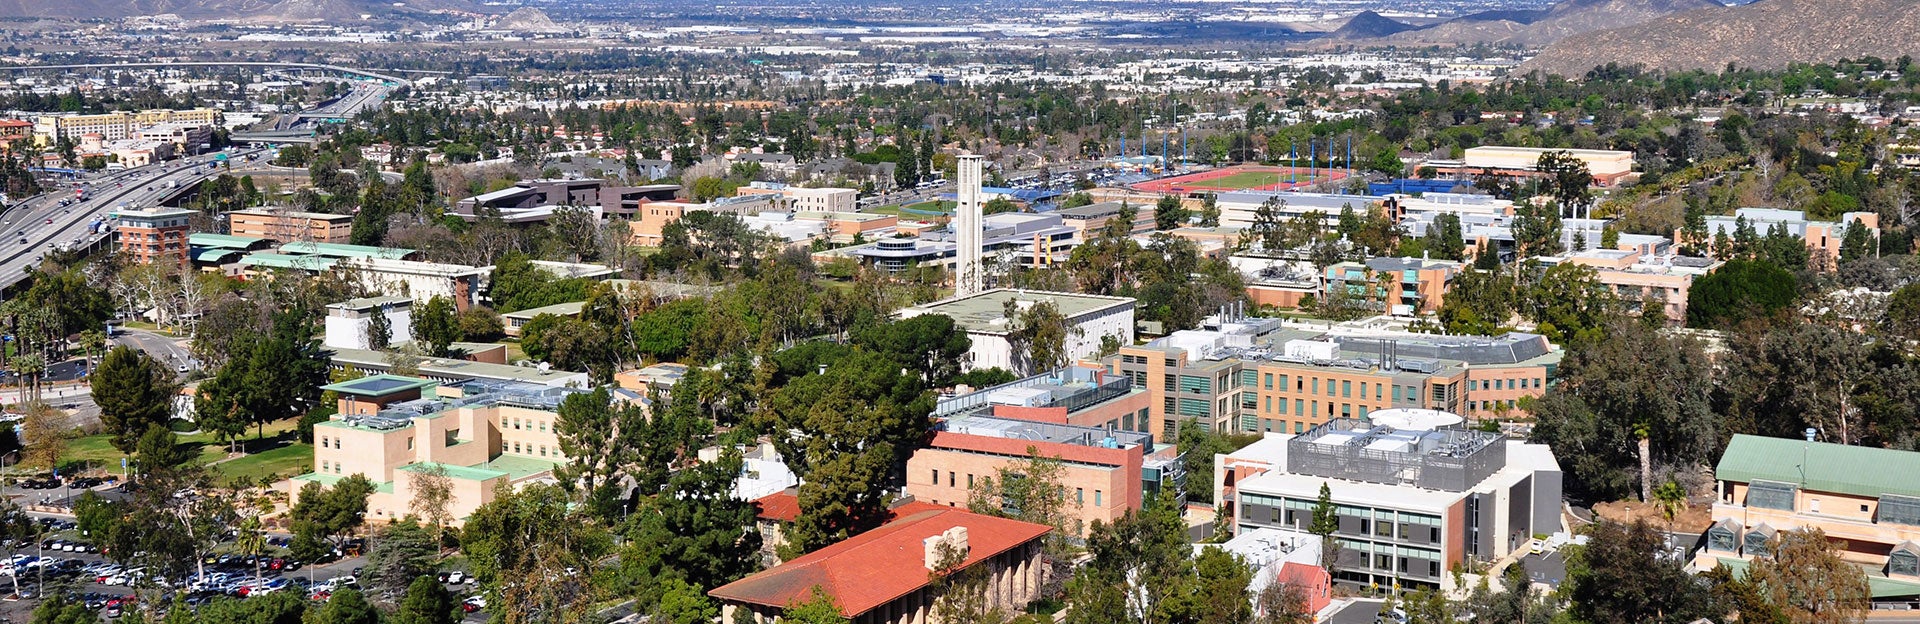 (c) UCR - aerial view of campus